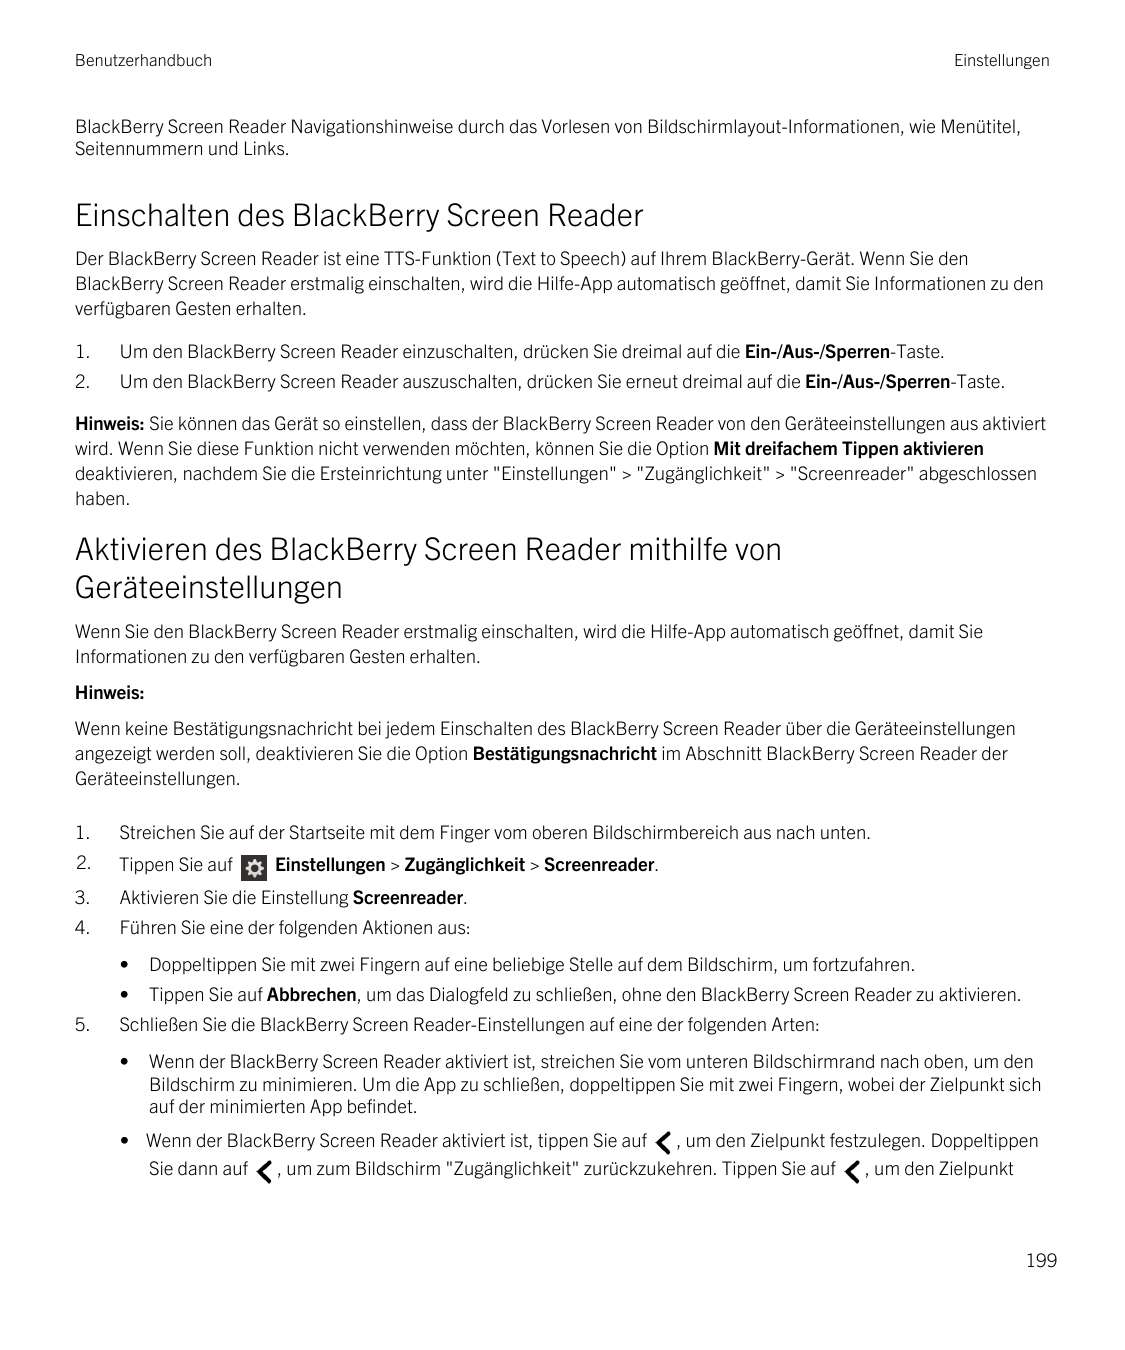 BenutzerhandbuchEinstellungenBlackBerry Screen Reader Navigationshinweise durch das Vorlesen von Bildschirmlayout-Informationen,